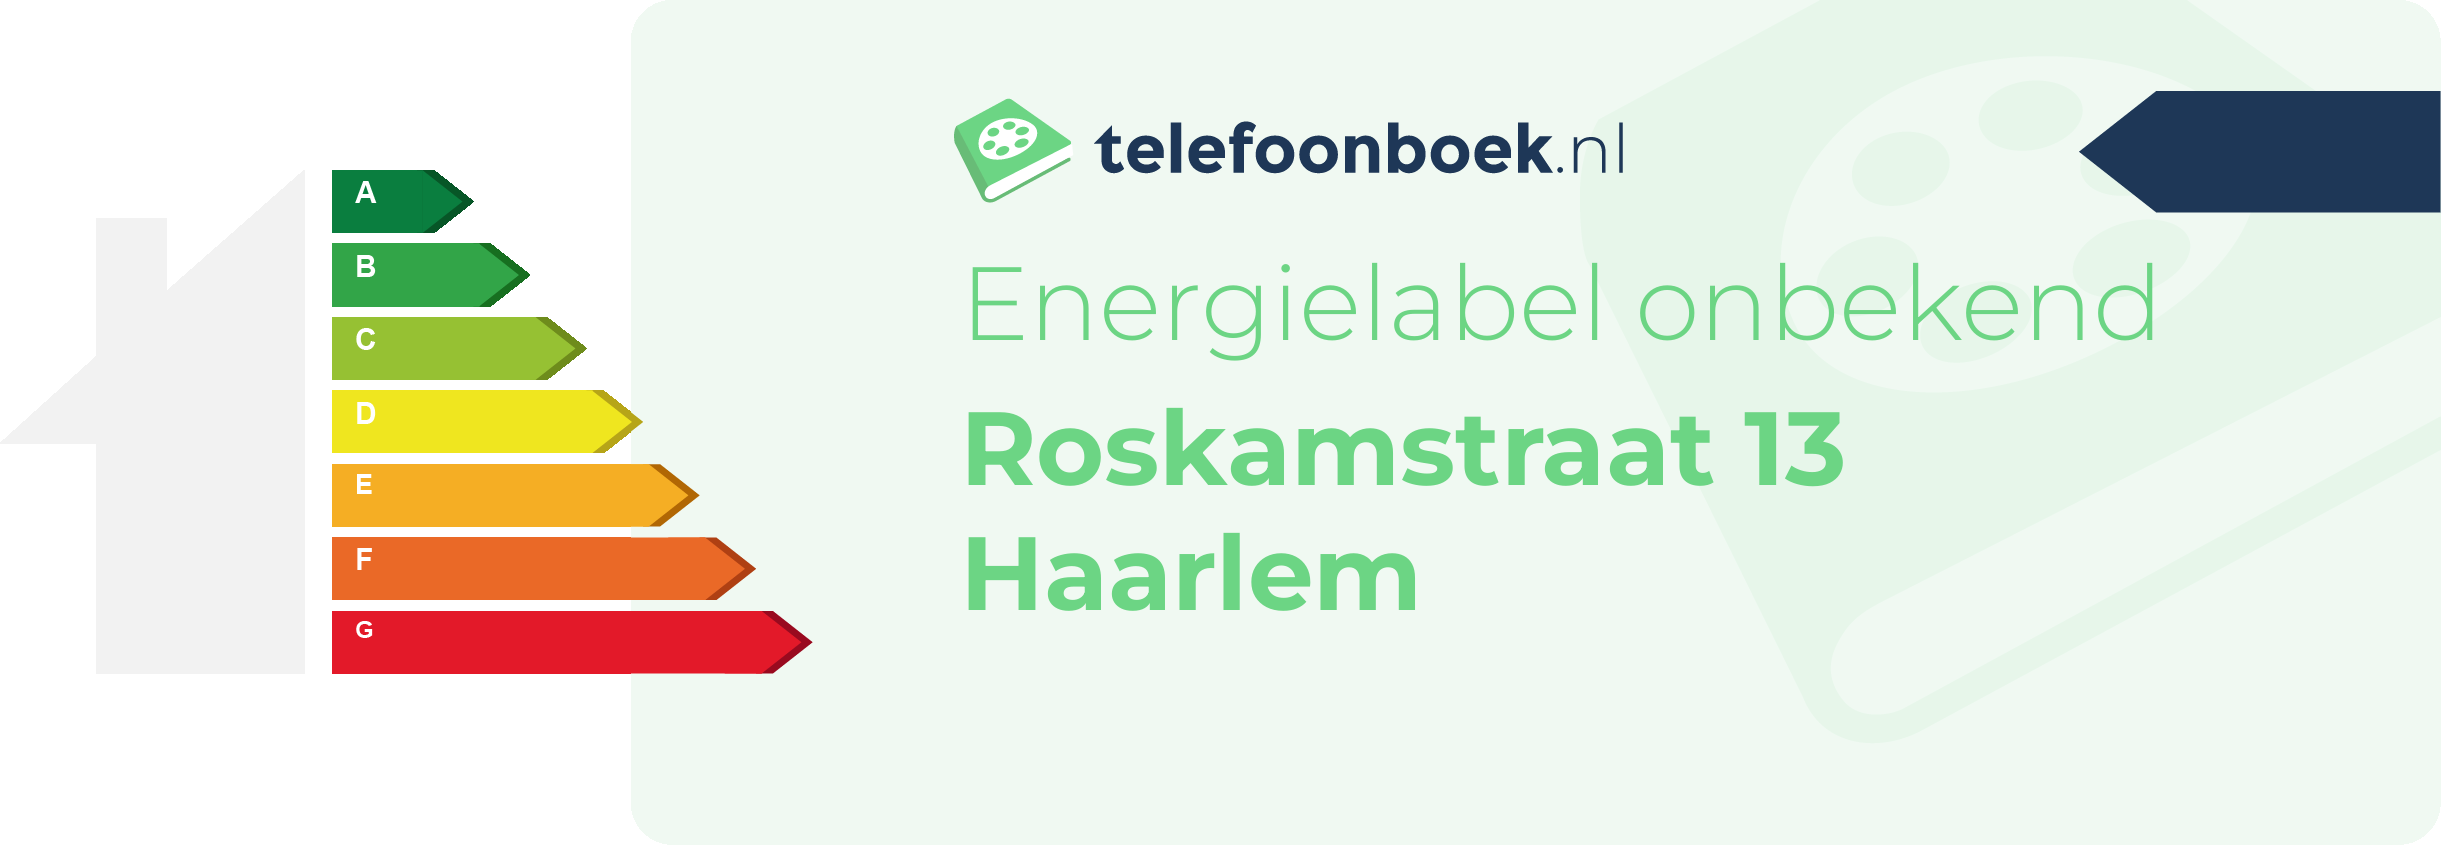 Energielabel Roskamstraat 13 Haarlem